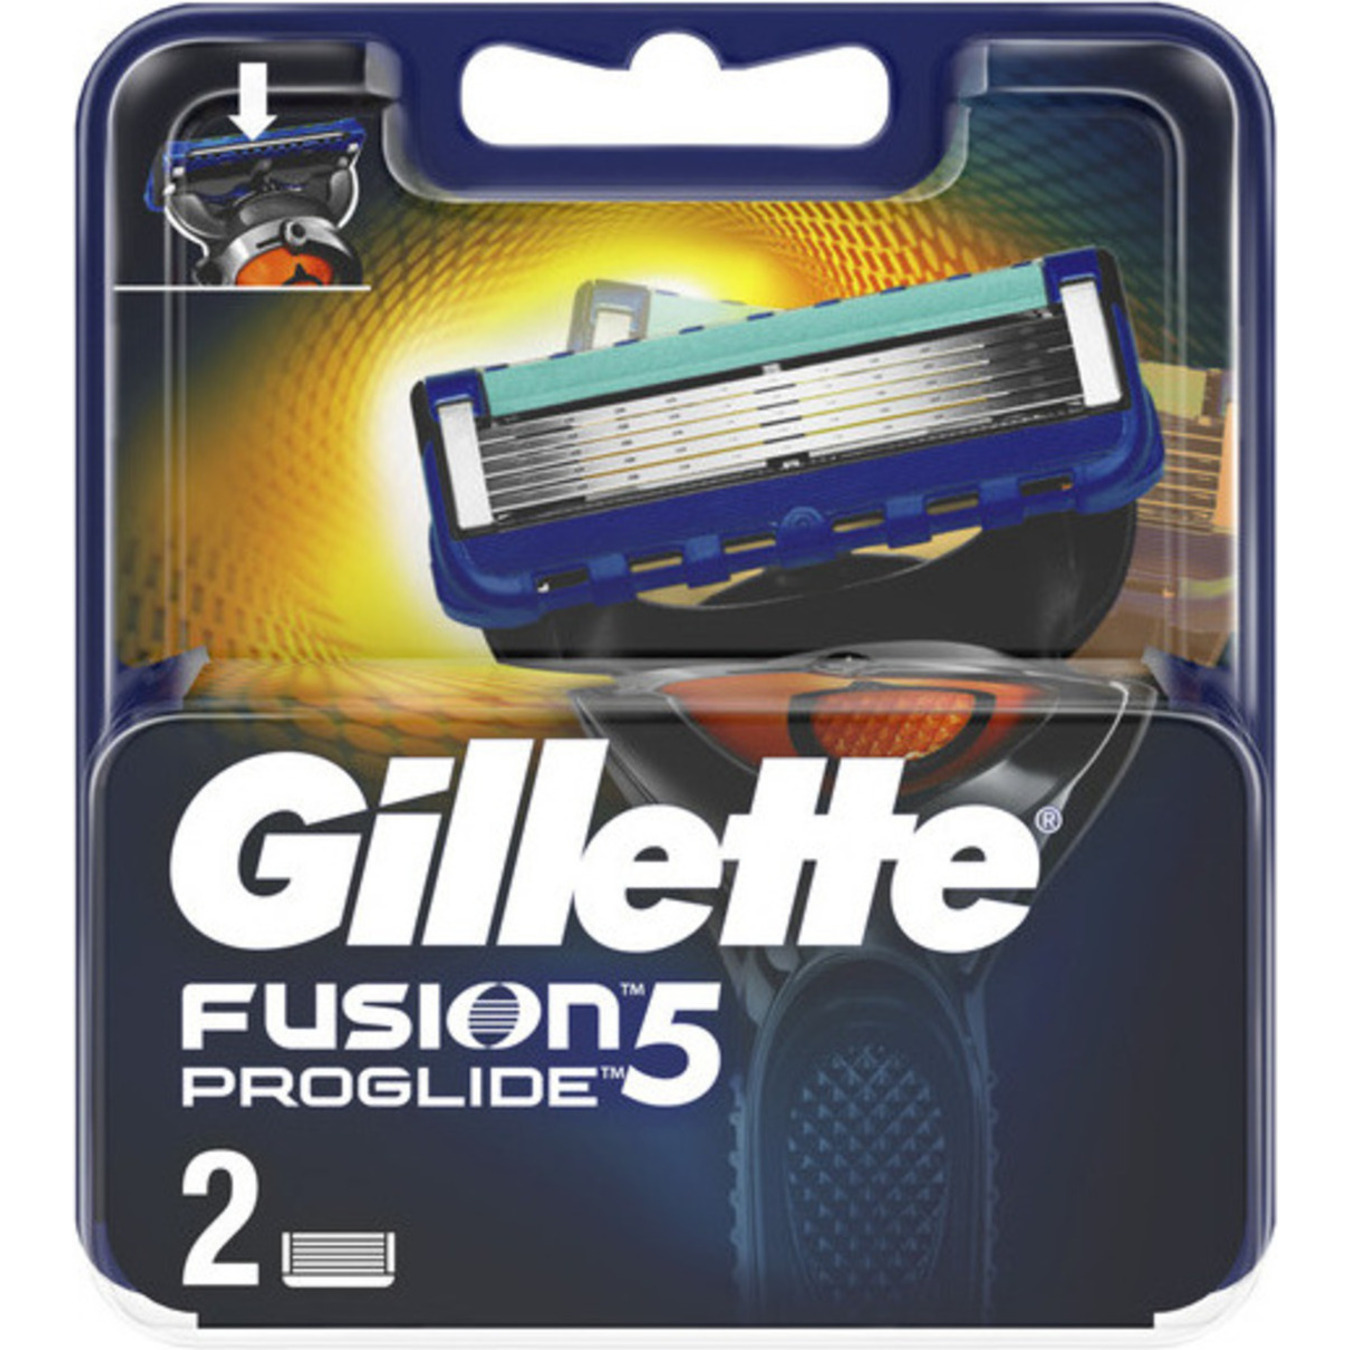 Gillette Fusion 5 ProGlide Replaceable Shaving Cartridges 2pcs